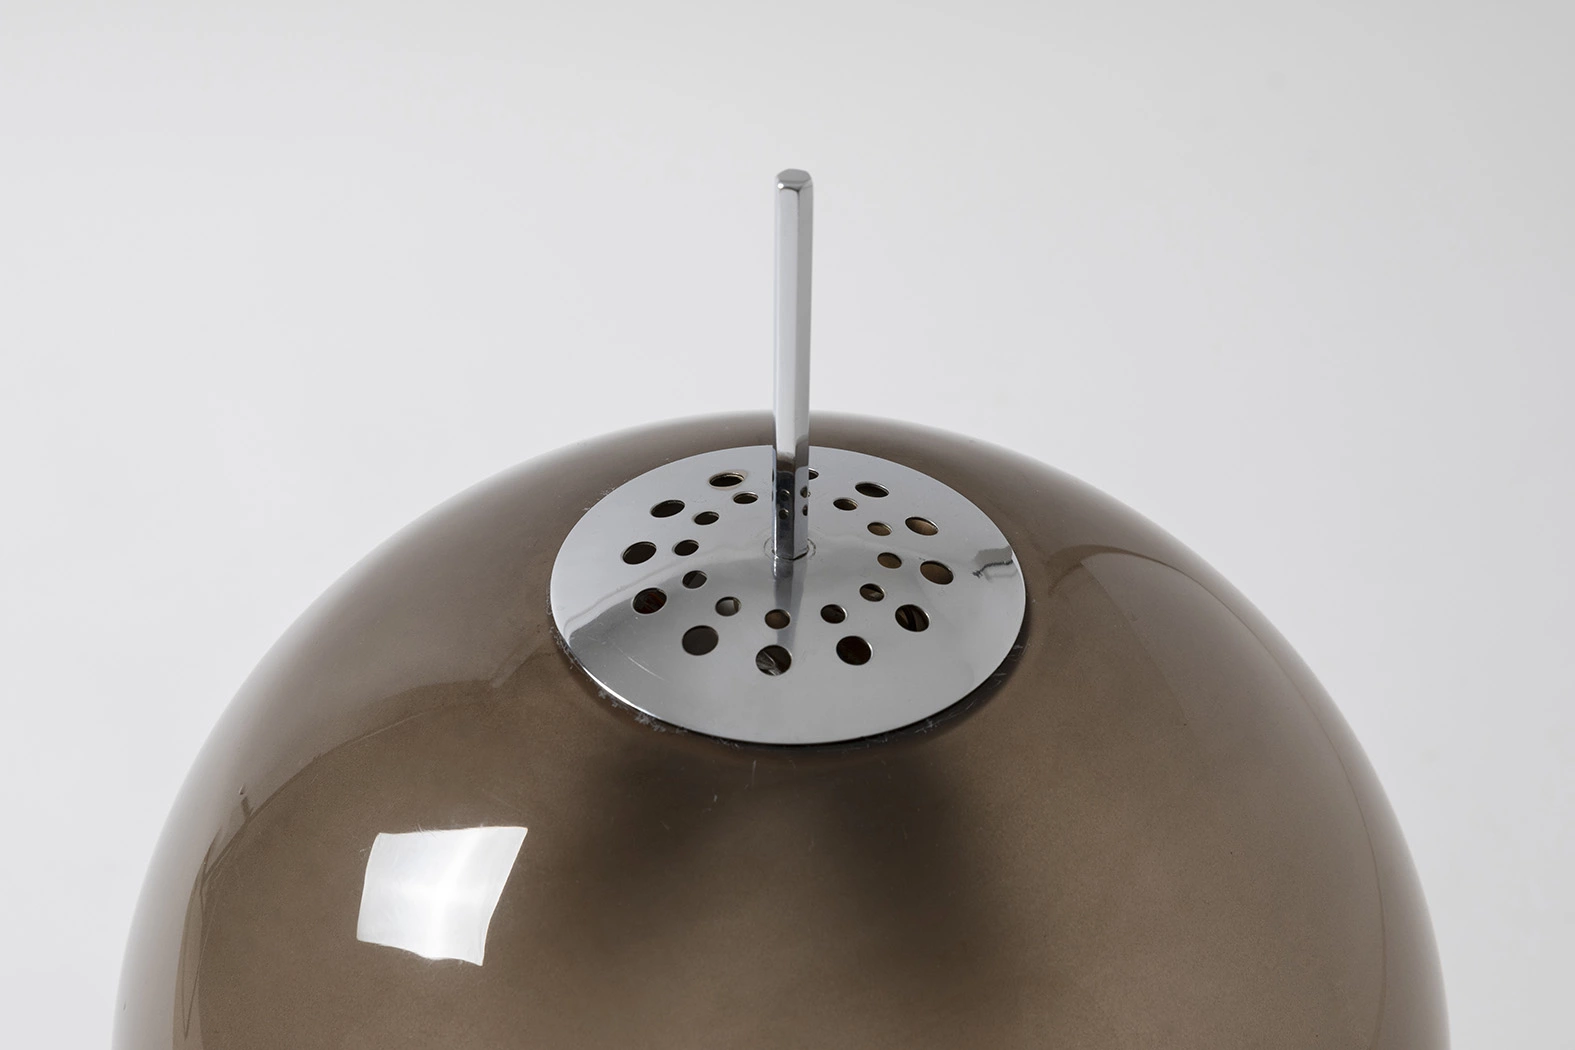 584/G (brown) - Gino Sarfatti - Table light - Galerie kreo